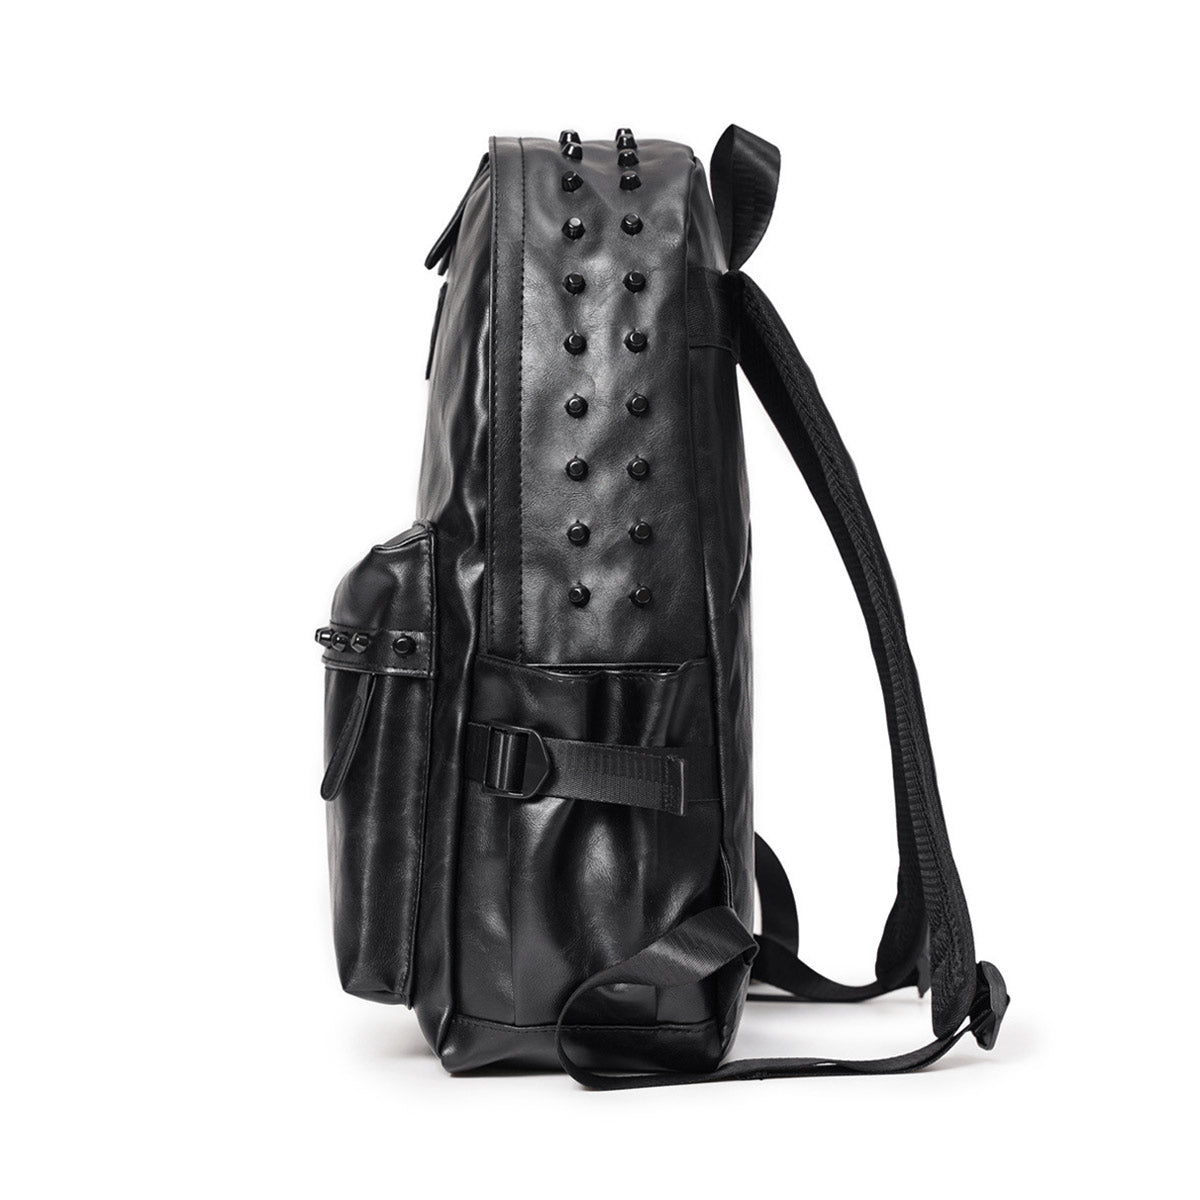 Black Punk Style Laptop Backpack - Waterproof Design